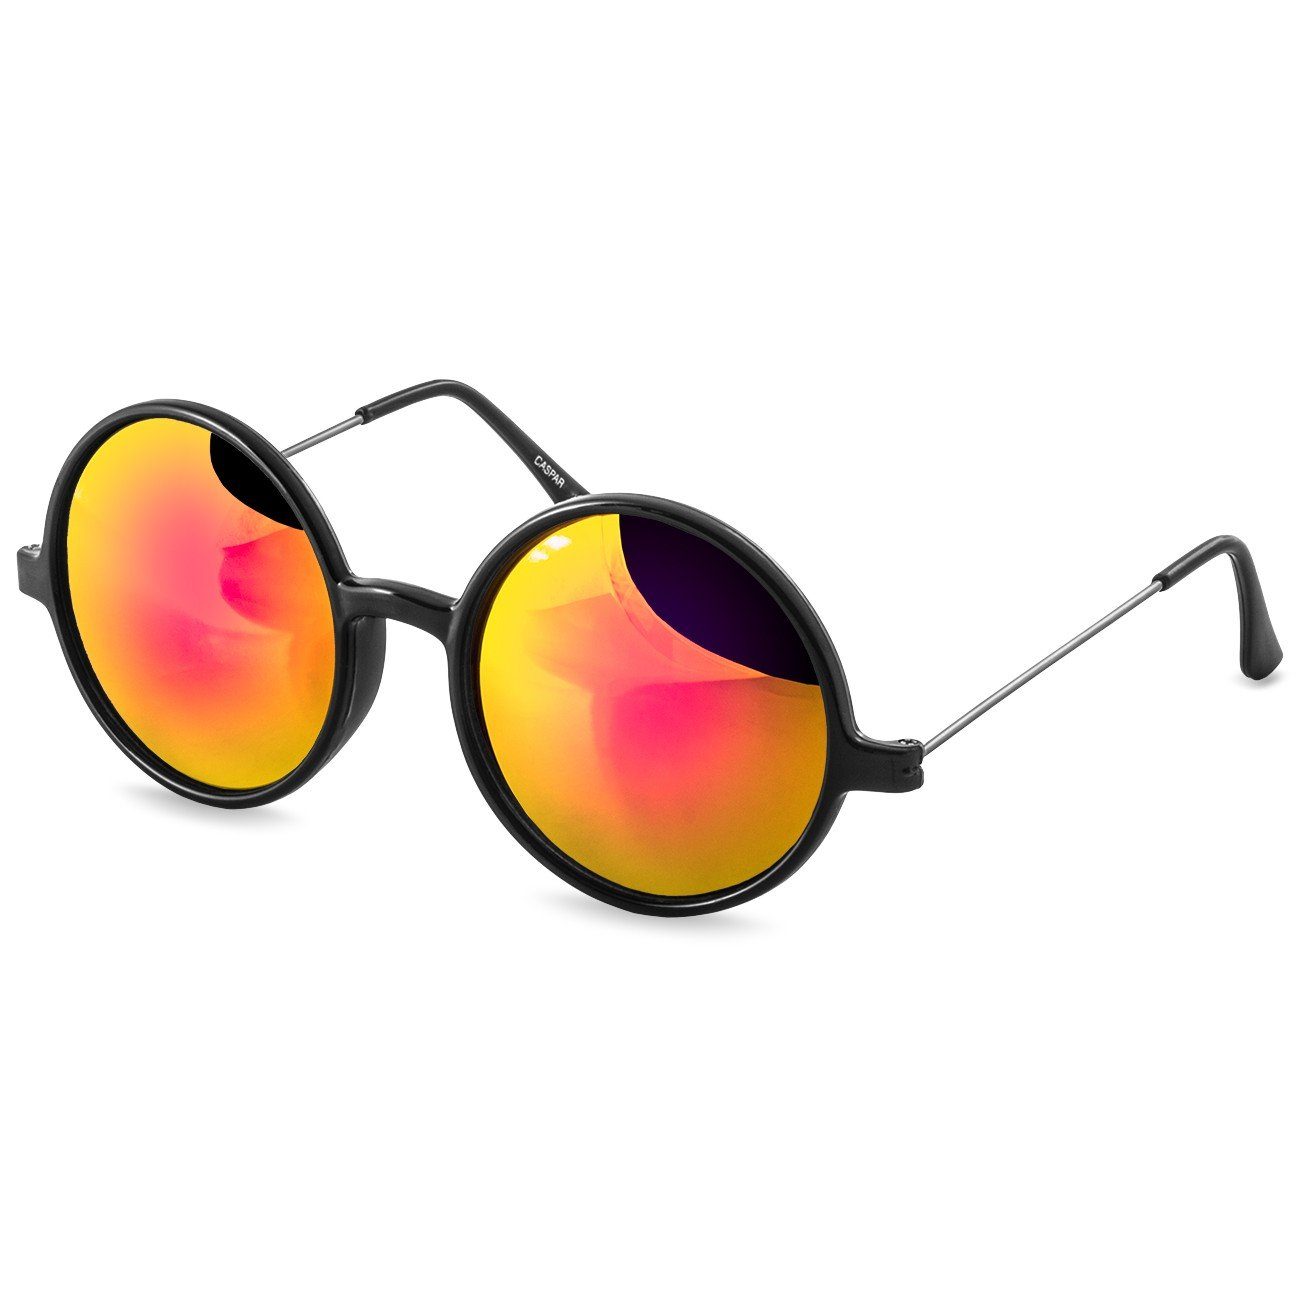 Caspar Sonnenbrille SG021 Unisex Retro XL Nickelbrille mit runden Gläsern bunt verspiegelt